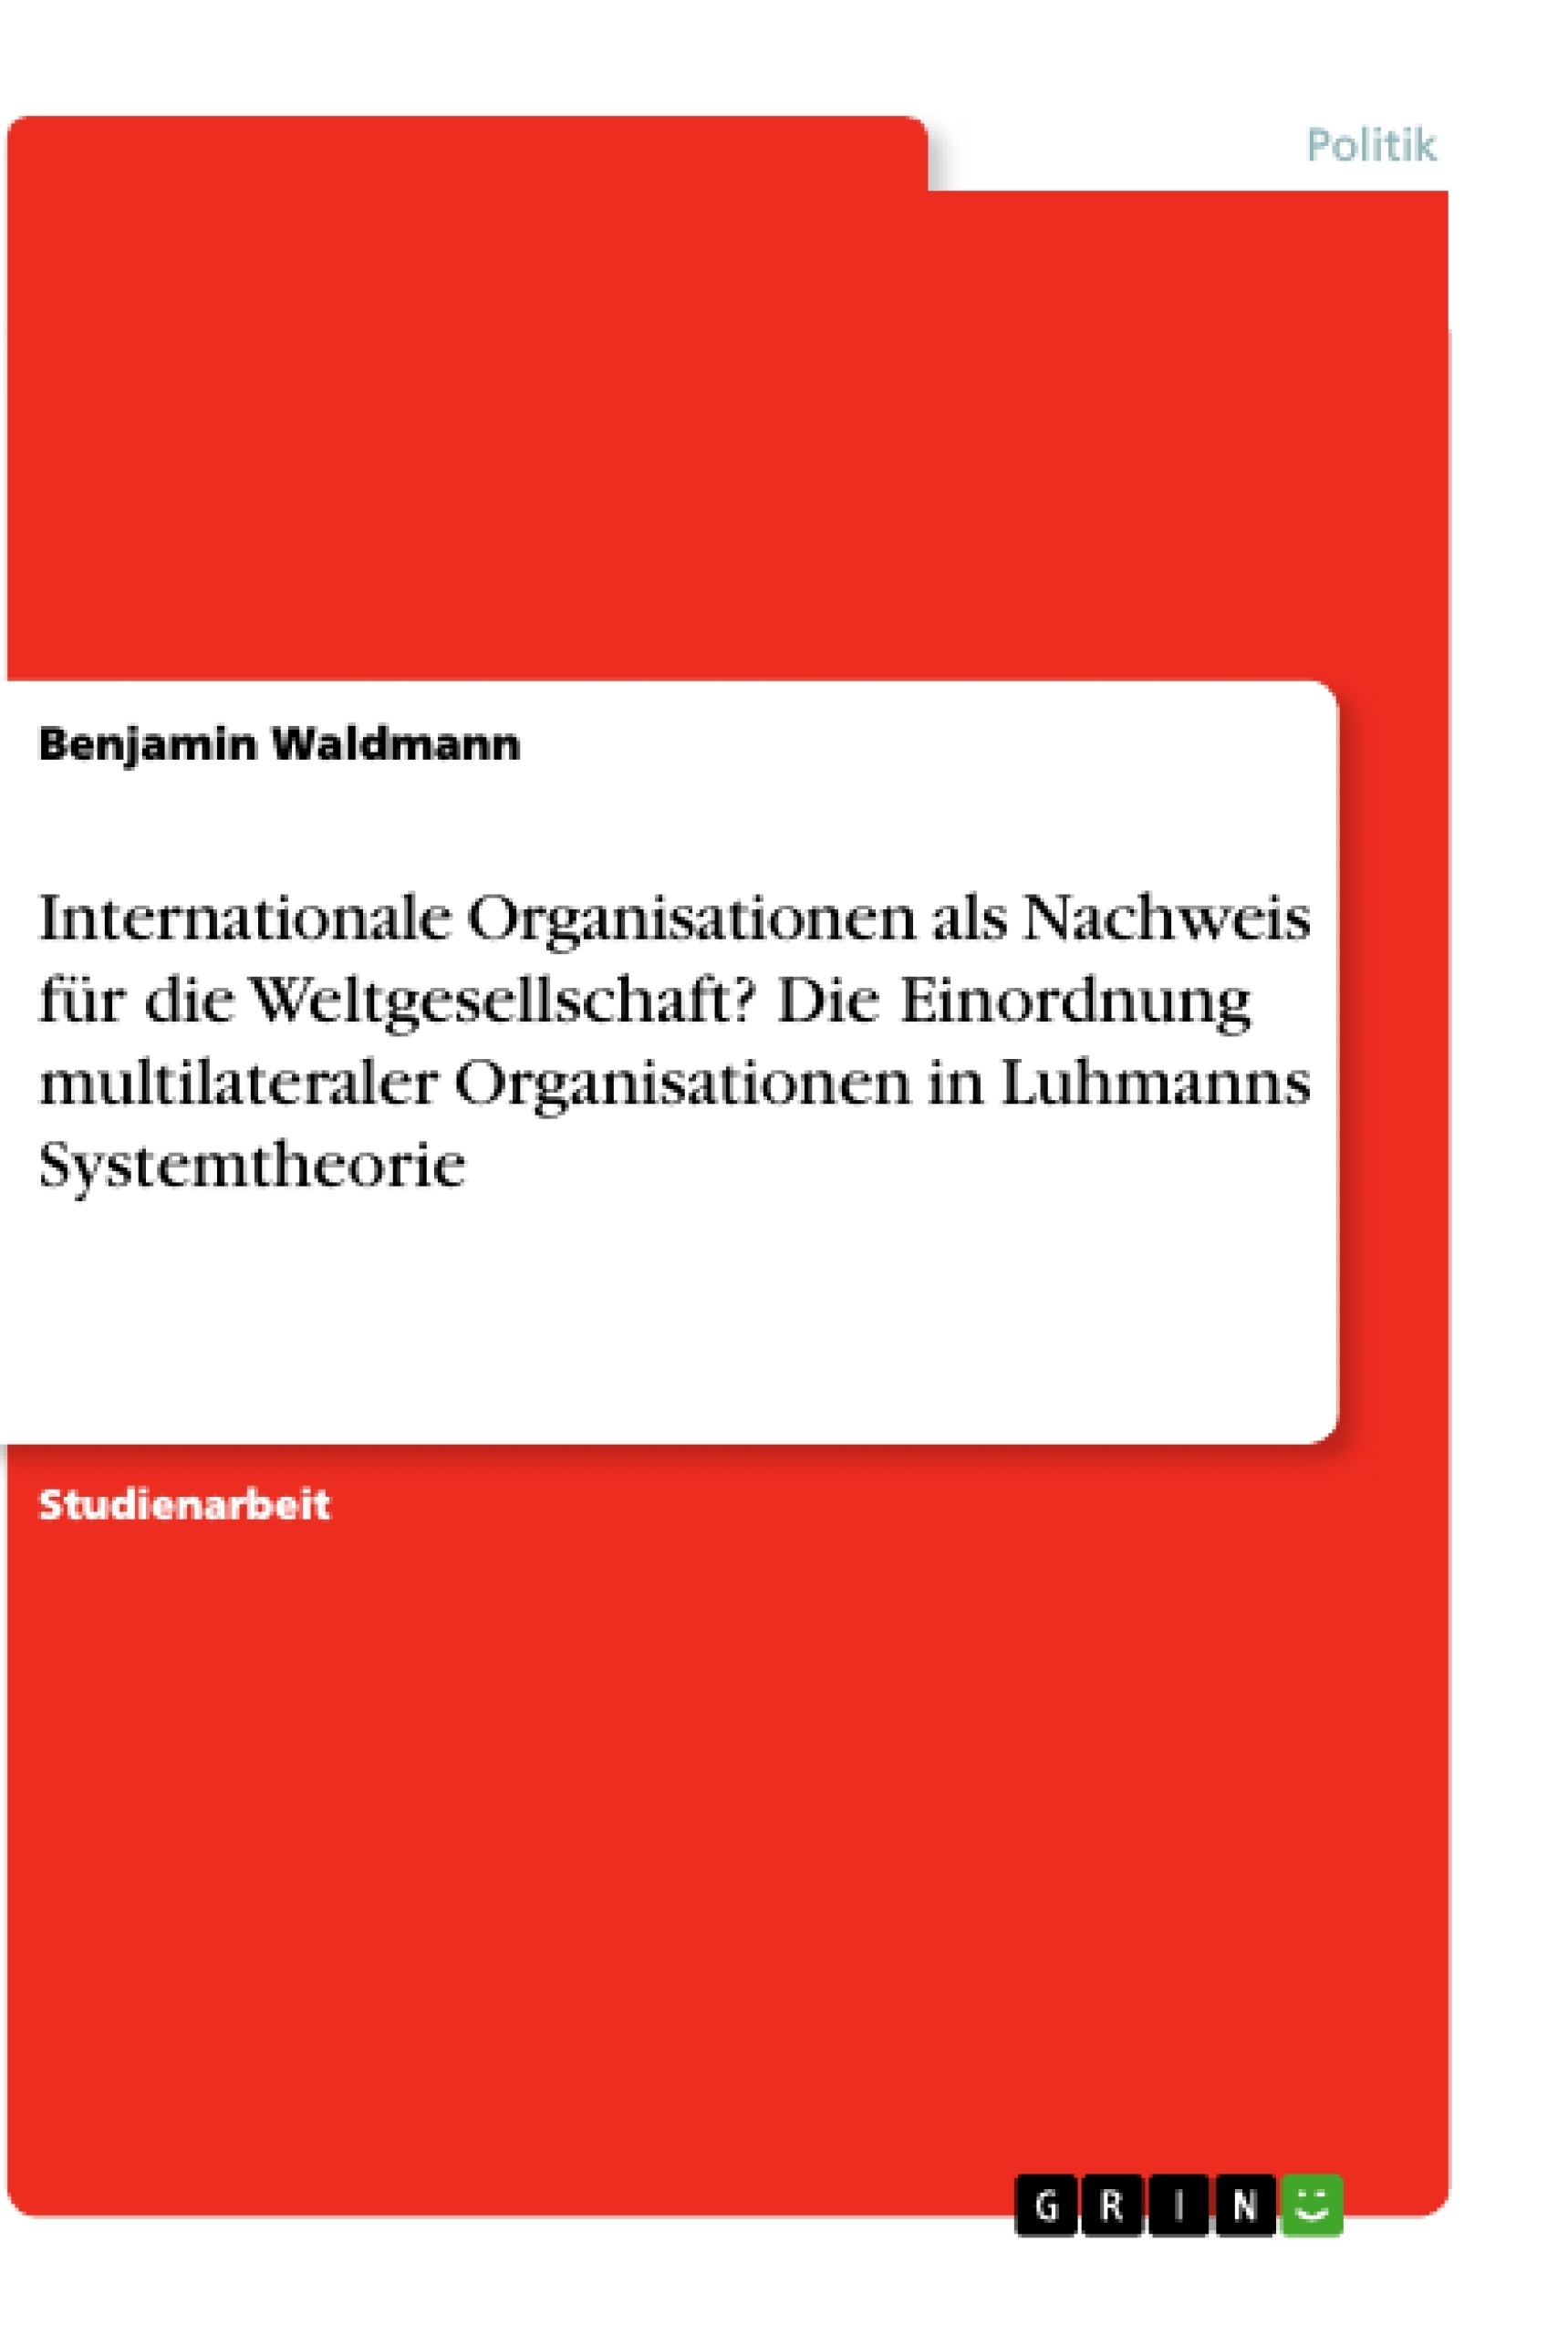 Titel: Internationale Organisationen als Nachweis für die Weltgesellschaft?
Die Einordnung multilateraler Organisationen in Luhmanns Systemtheorie